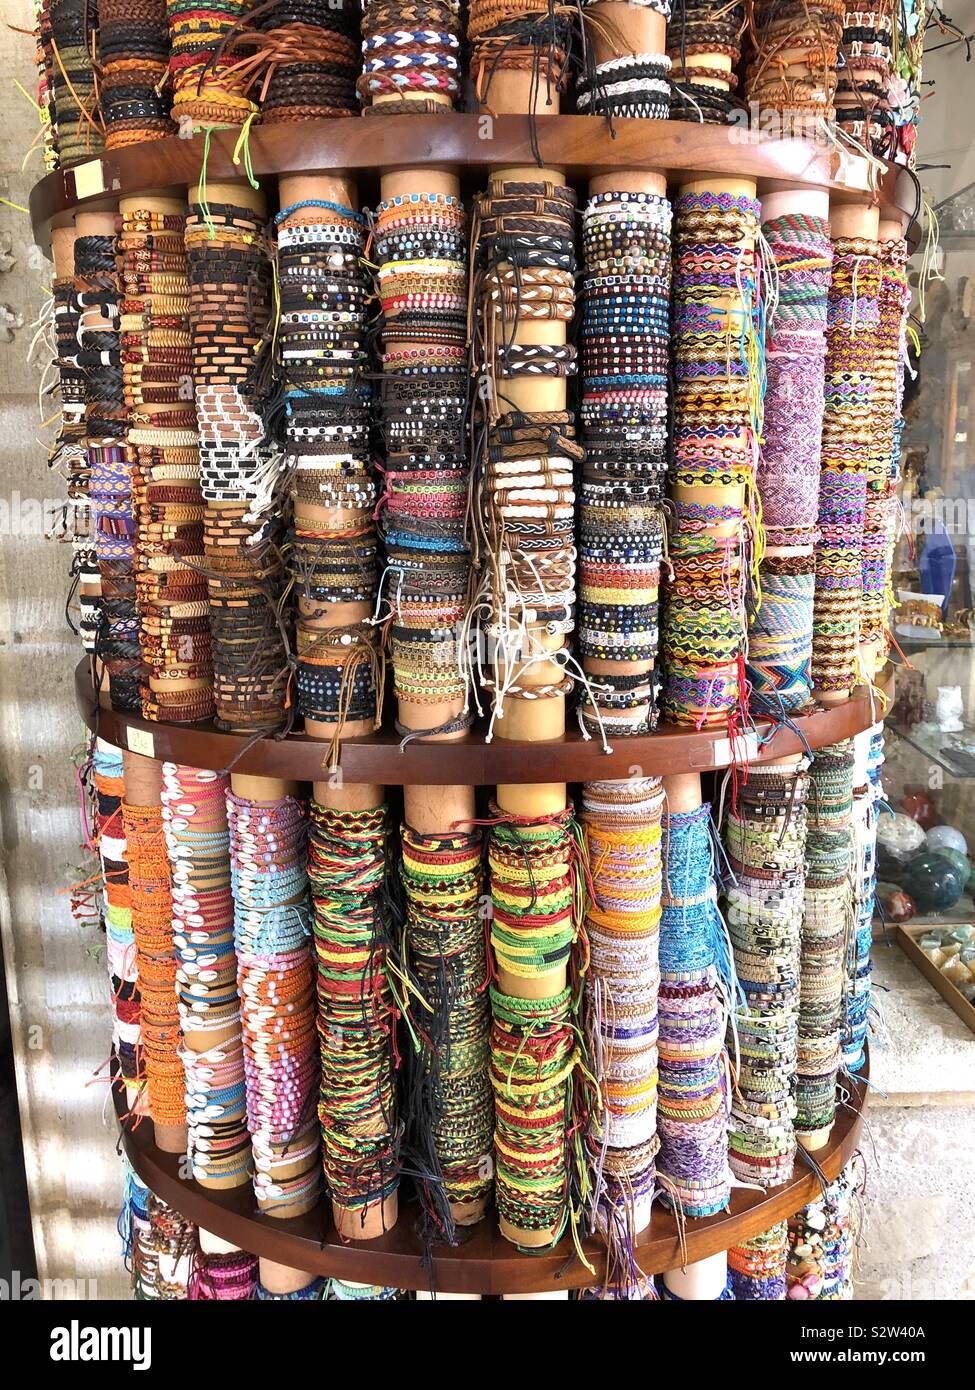 Beaucoup de bracelets et bracelets tissés sur l'affichage à l'extérieur d'une boutique Banque D'Images